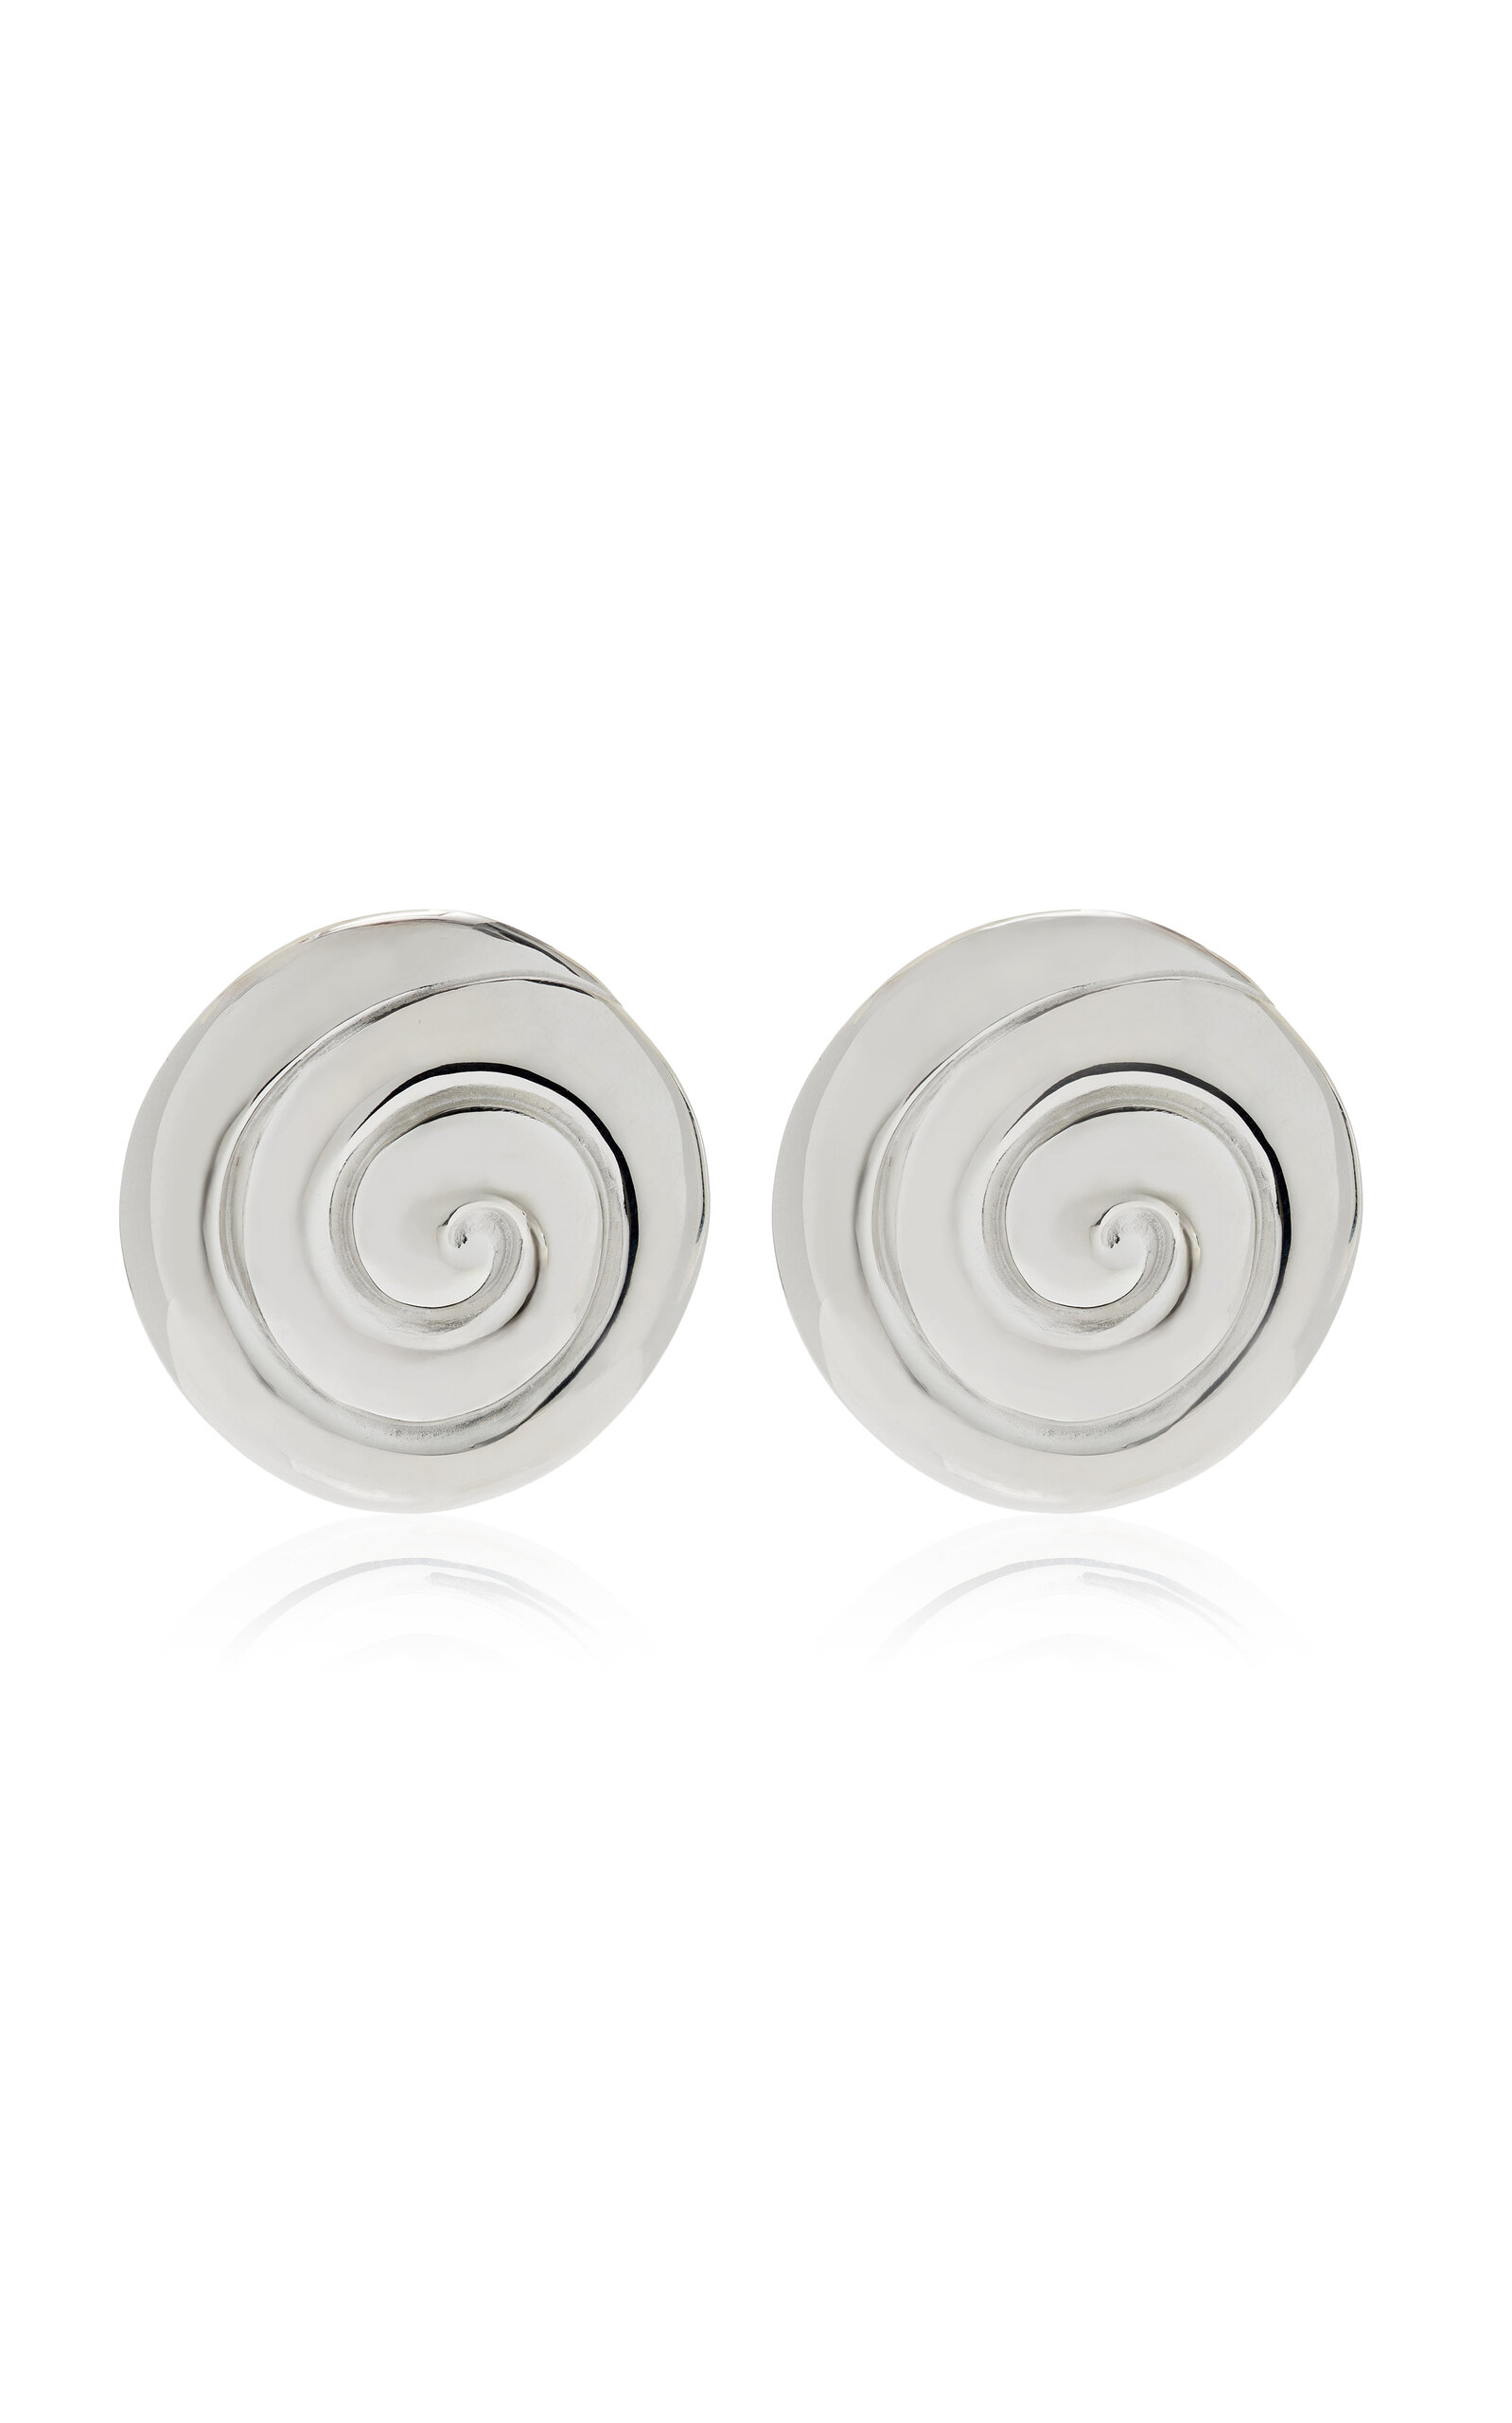 Uzu Recycled Sterling Silver Earrings